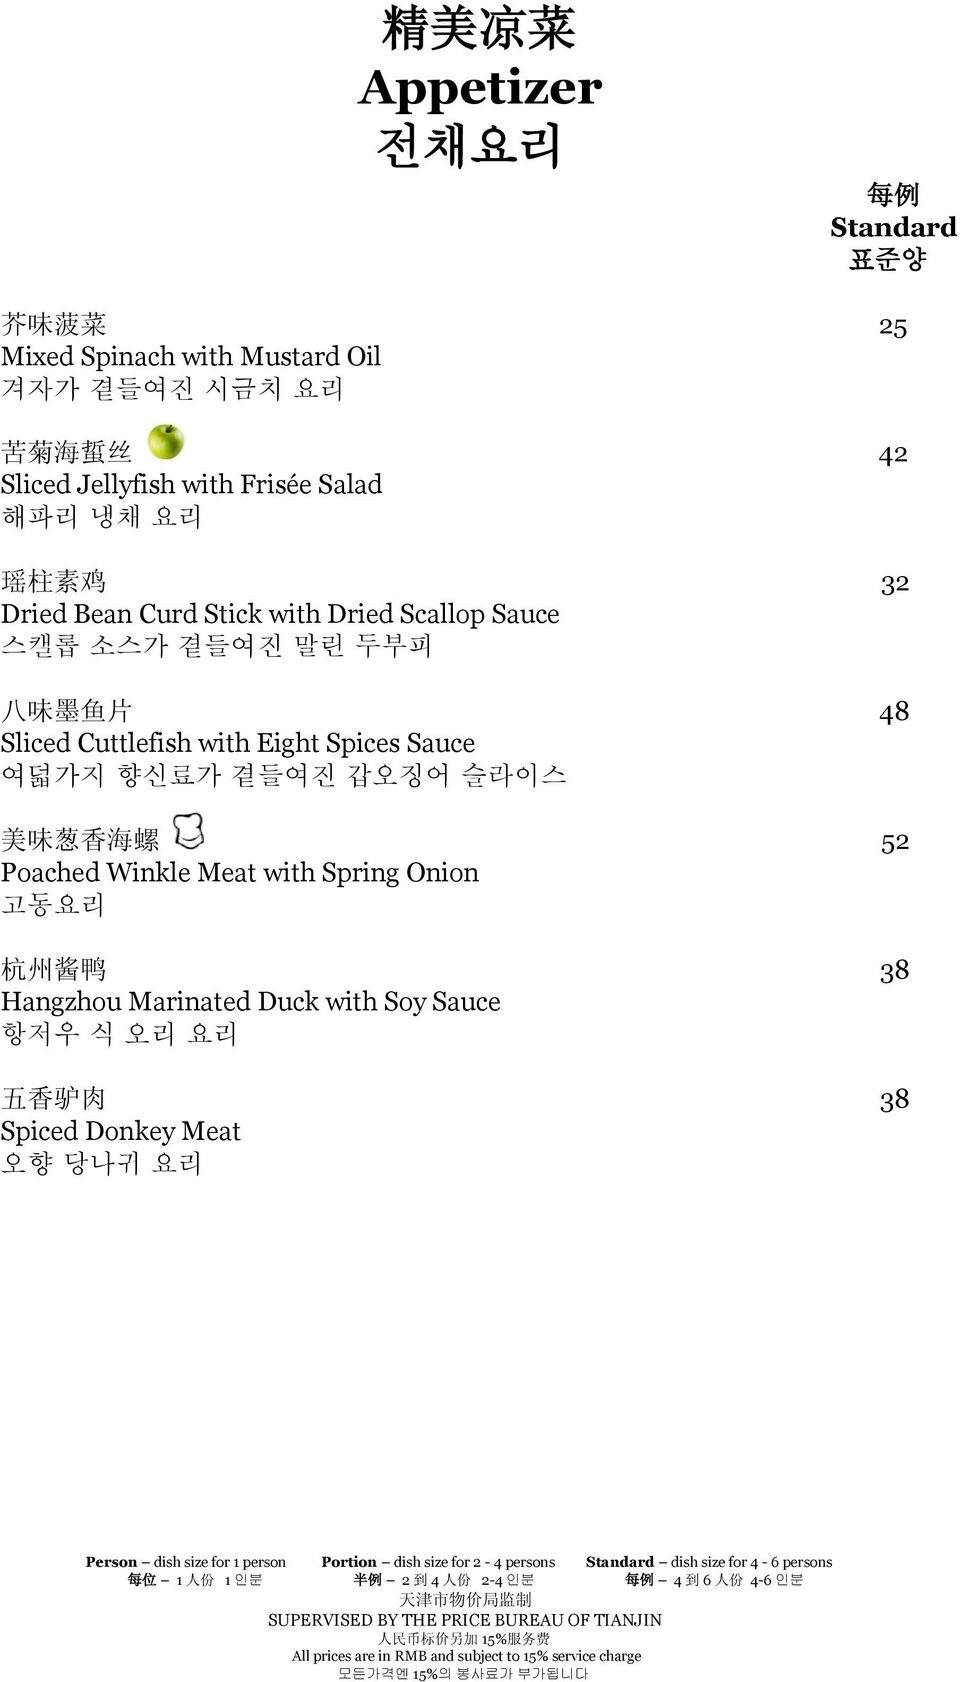 味 葱 香 海 螺 52 Poached Winkle Meat with Spring Onion 고동요리 杭 州 酱 鸭 38 Hangzhou Marinated Duck with Soy Sauce 항저우 식 오리 요리 五 香 驴 肉 38 Spiced Donkey Meat 오향 당나귀 요리